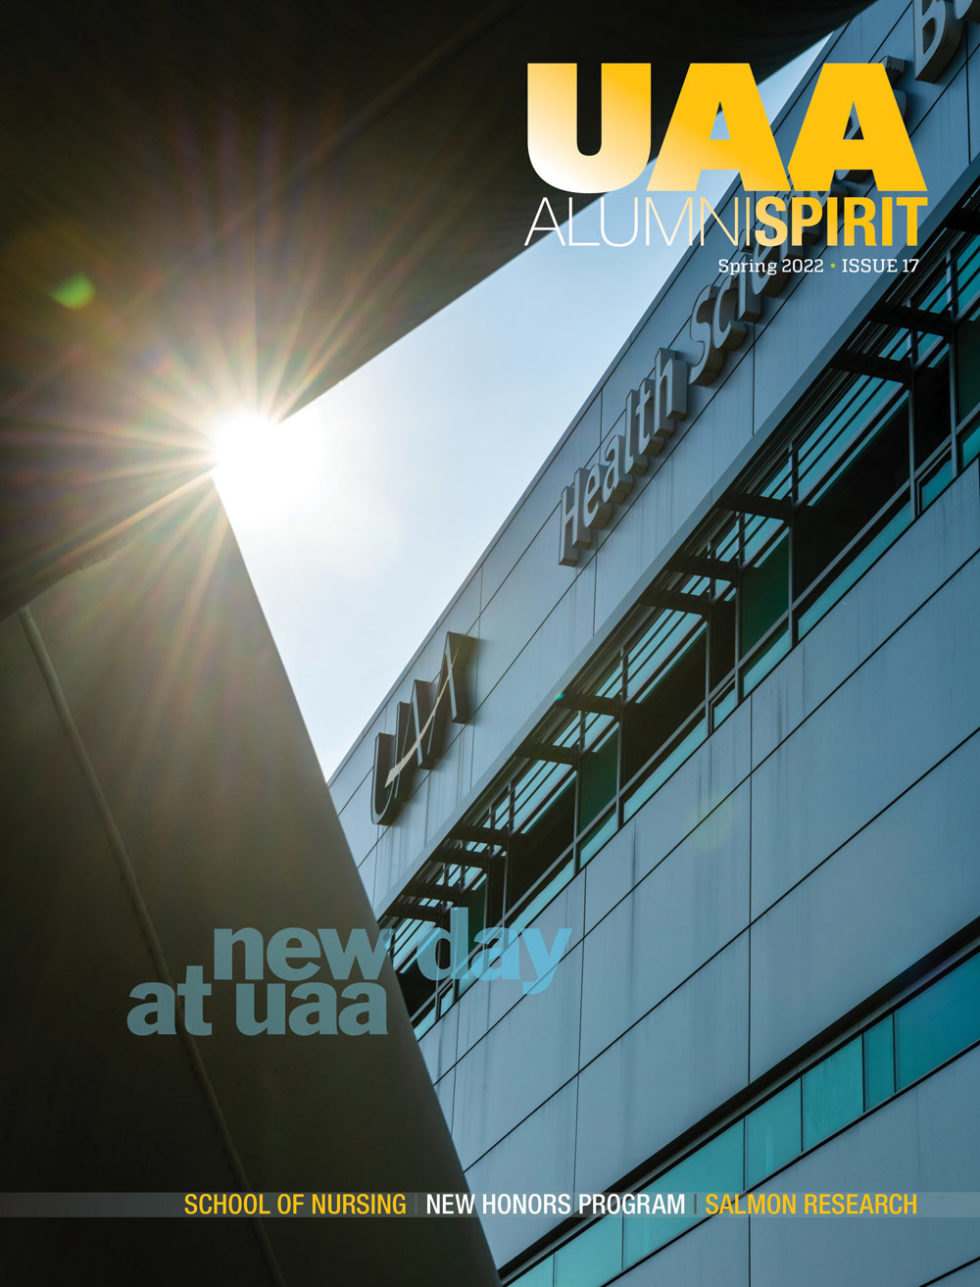 Spring 2022 Alumni Spirit magazine cover